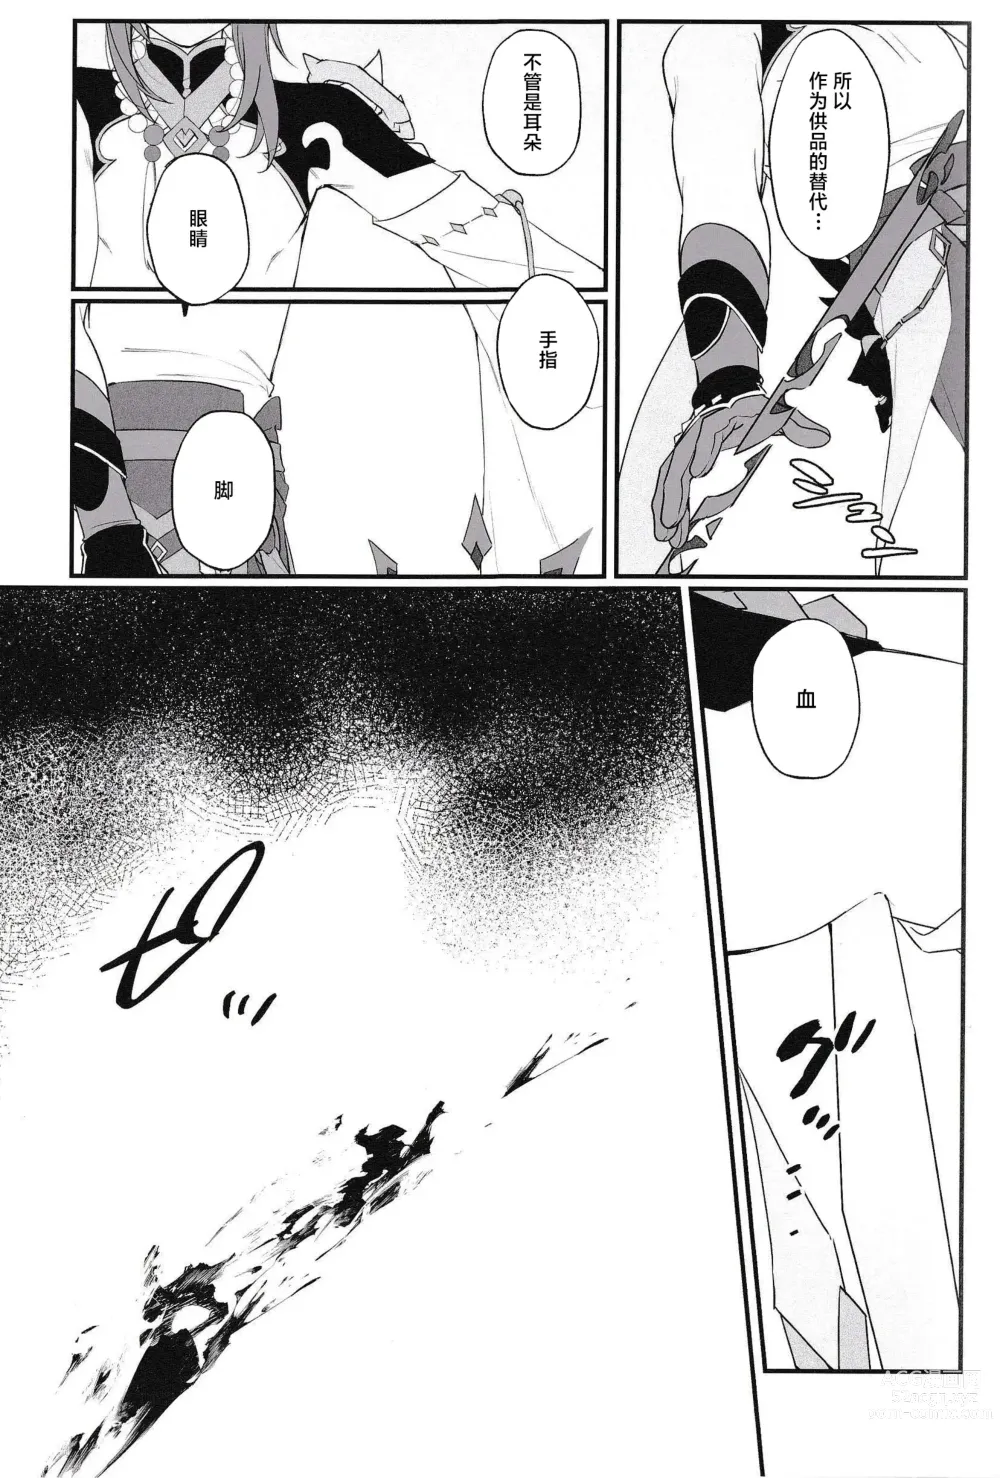 Page 11 of doujinshi Mugen no Sentaku